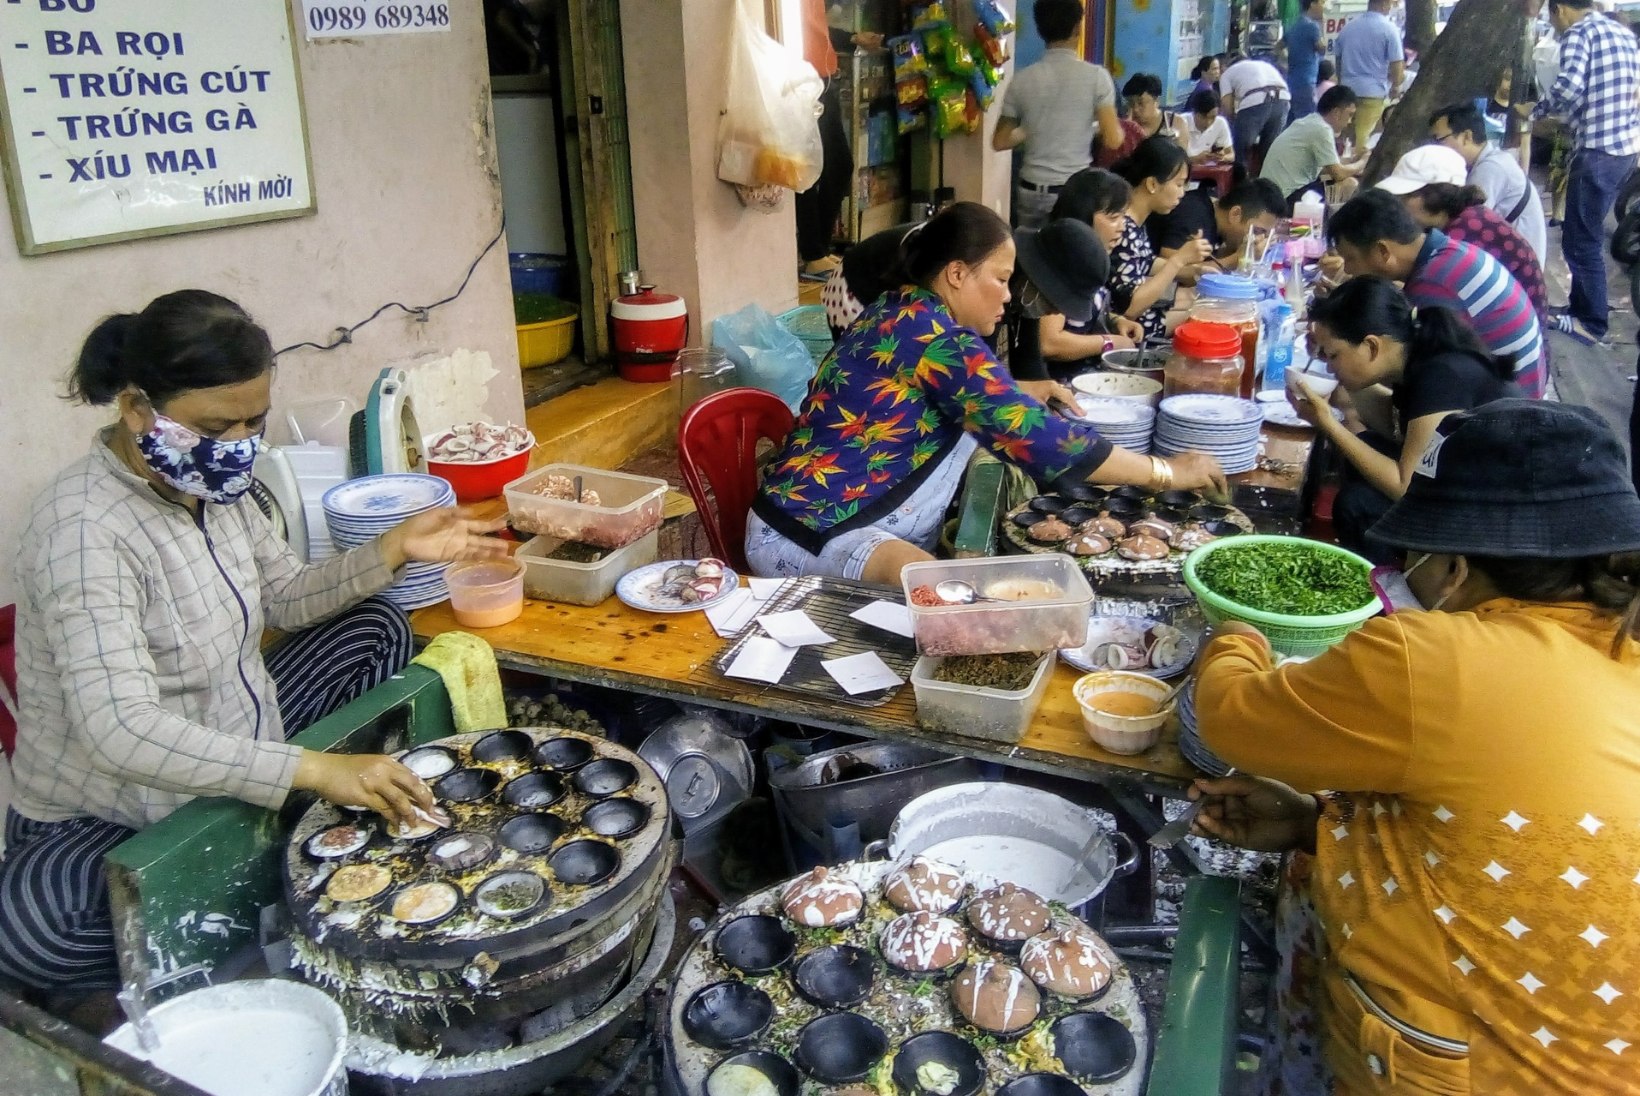 Eestlanna maitseelamused Vietnamis: lisaks suppidele-kookidele olen krõbistanud grillitud siidiussi ja järanud vintskevõitu krokodilli 